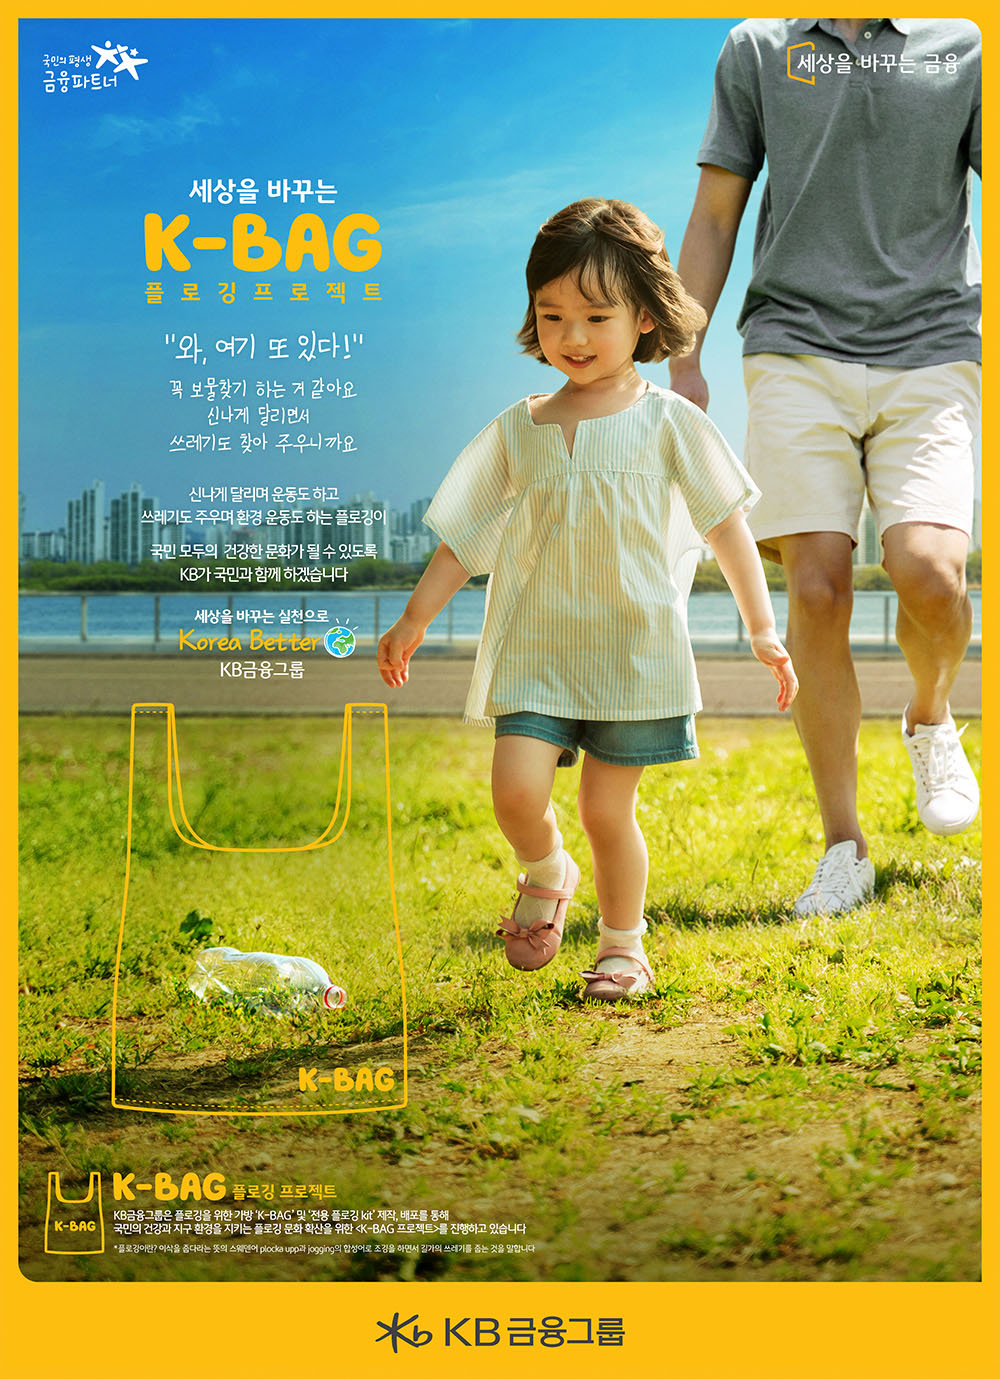 K-Bag 플로깅 프로젝트 - ②